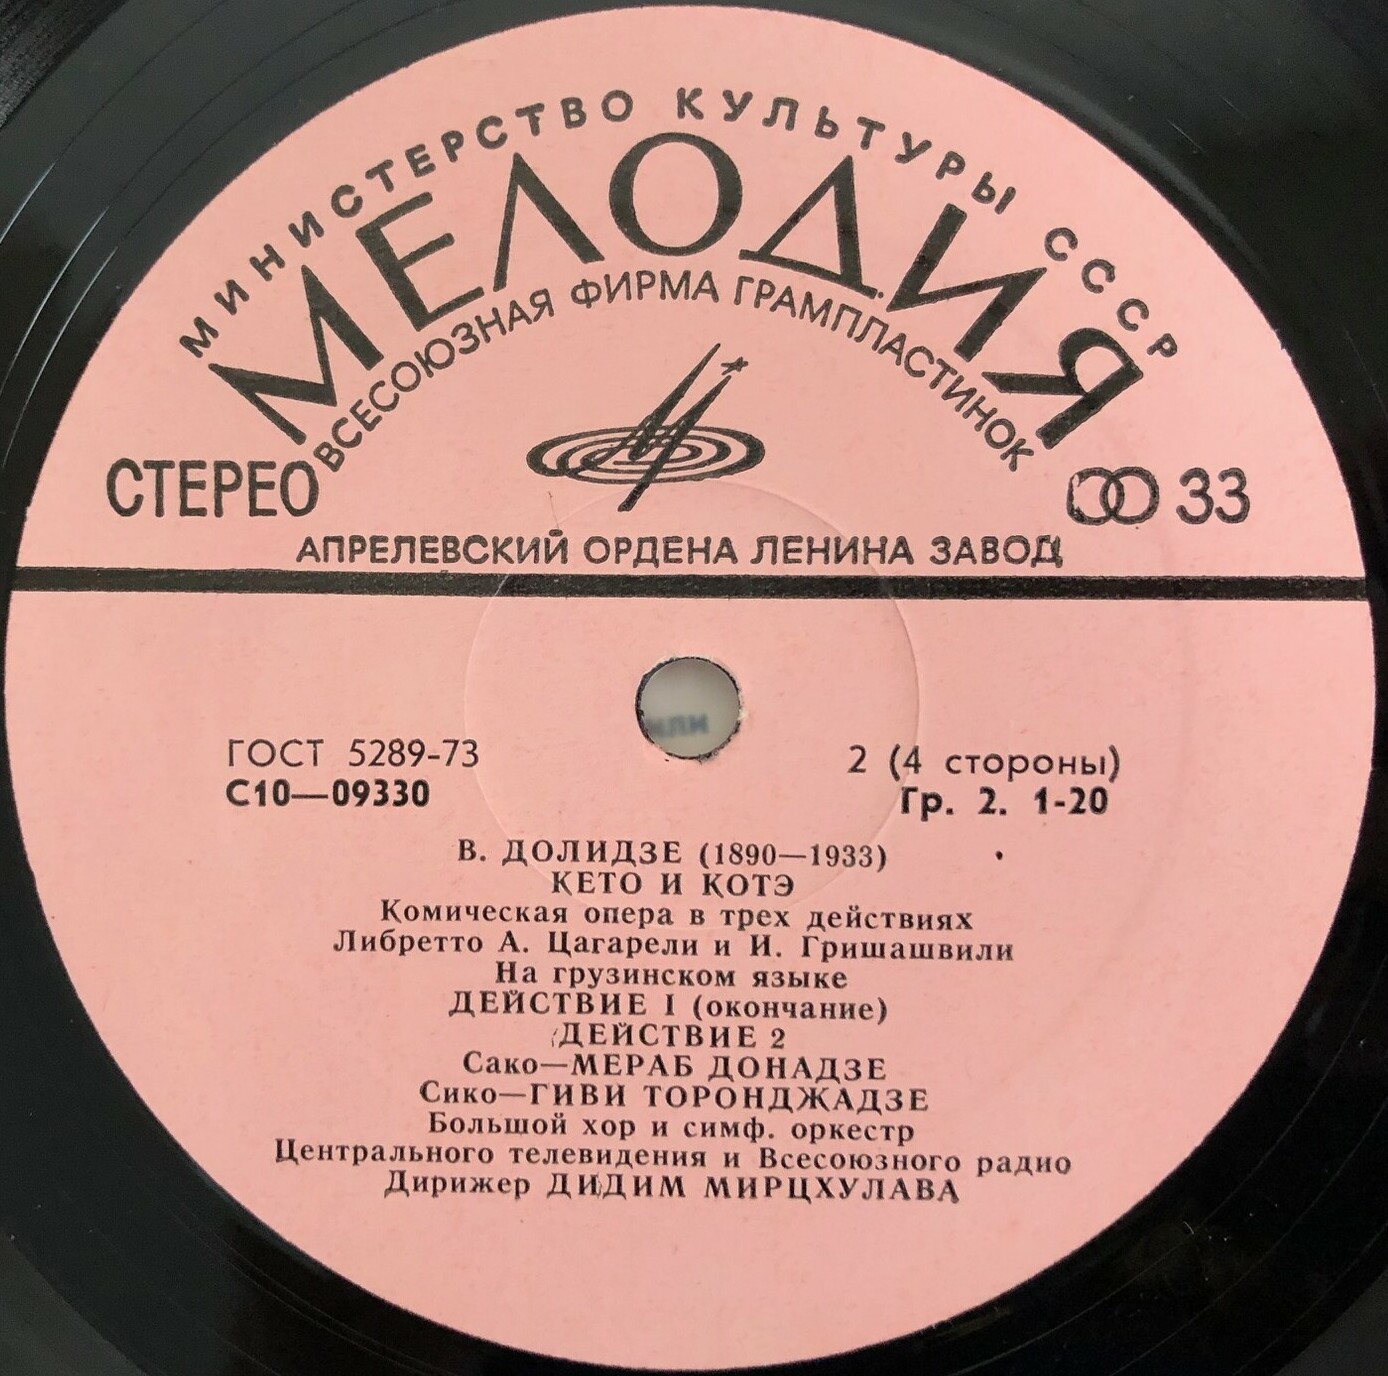 B. ДОЛИДЗЕ (1890-1933): «Кето и Котэ», комическая опера в трех действиях (на грузинском яз.).